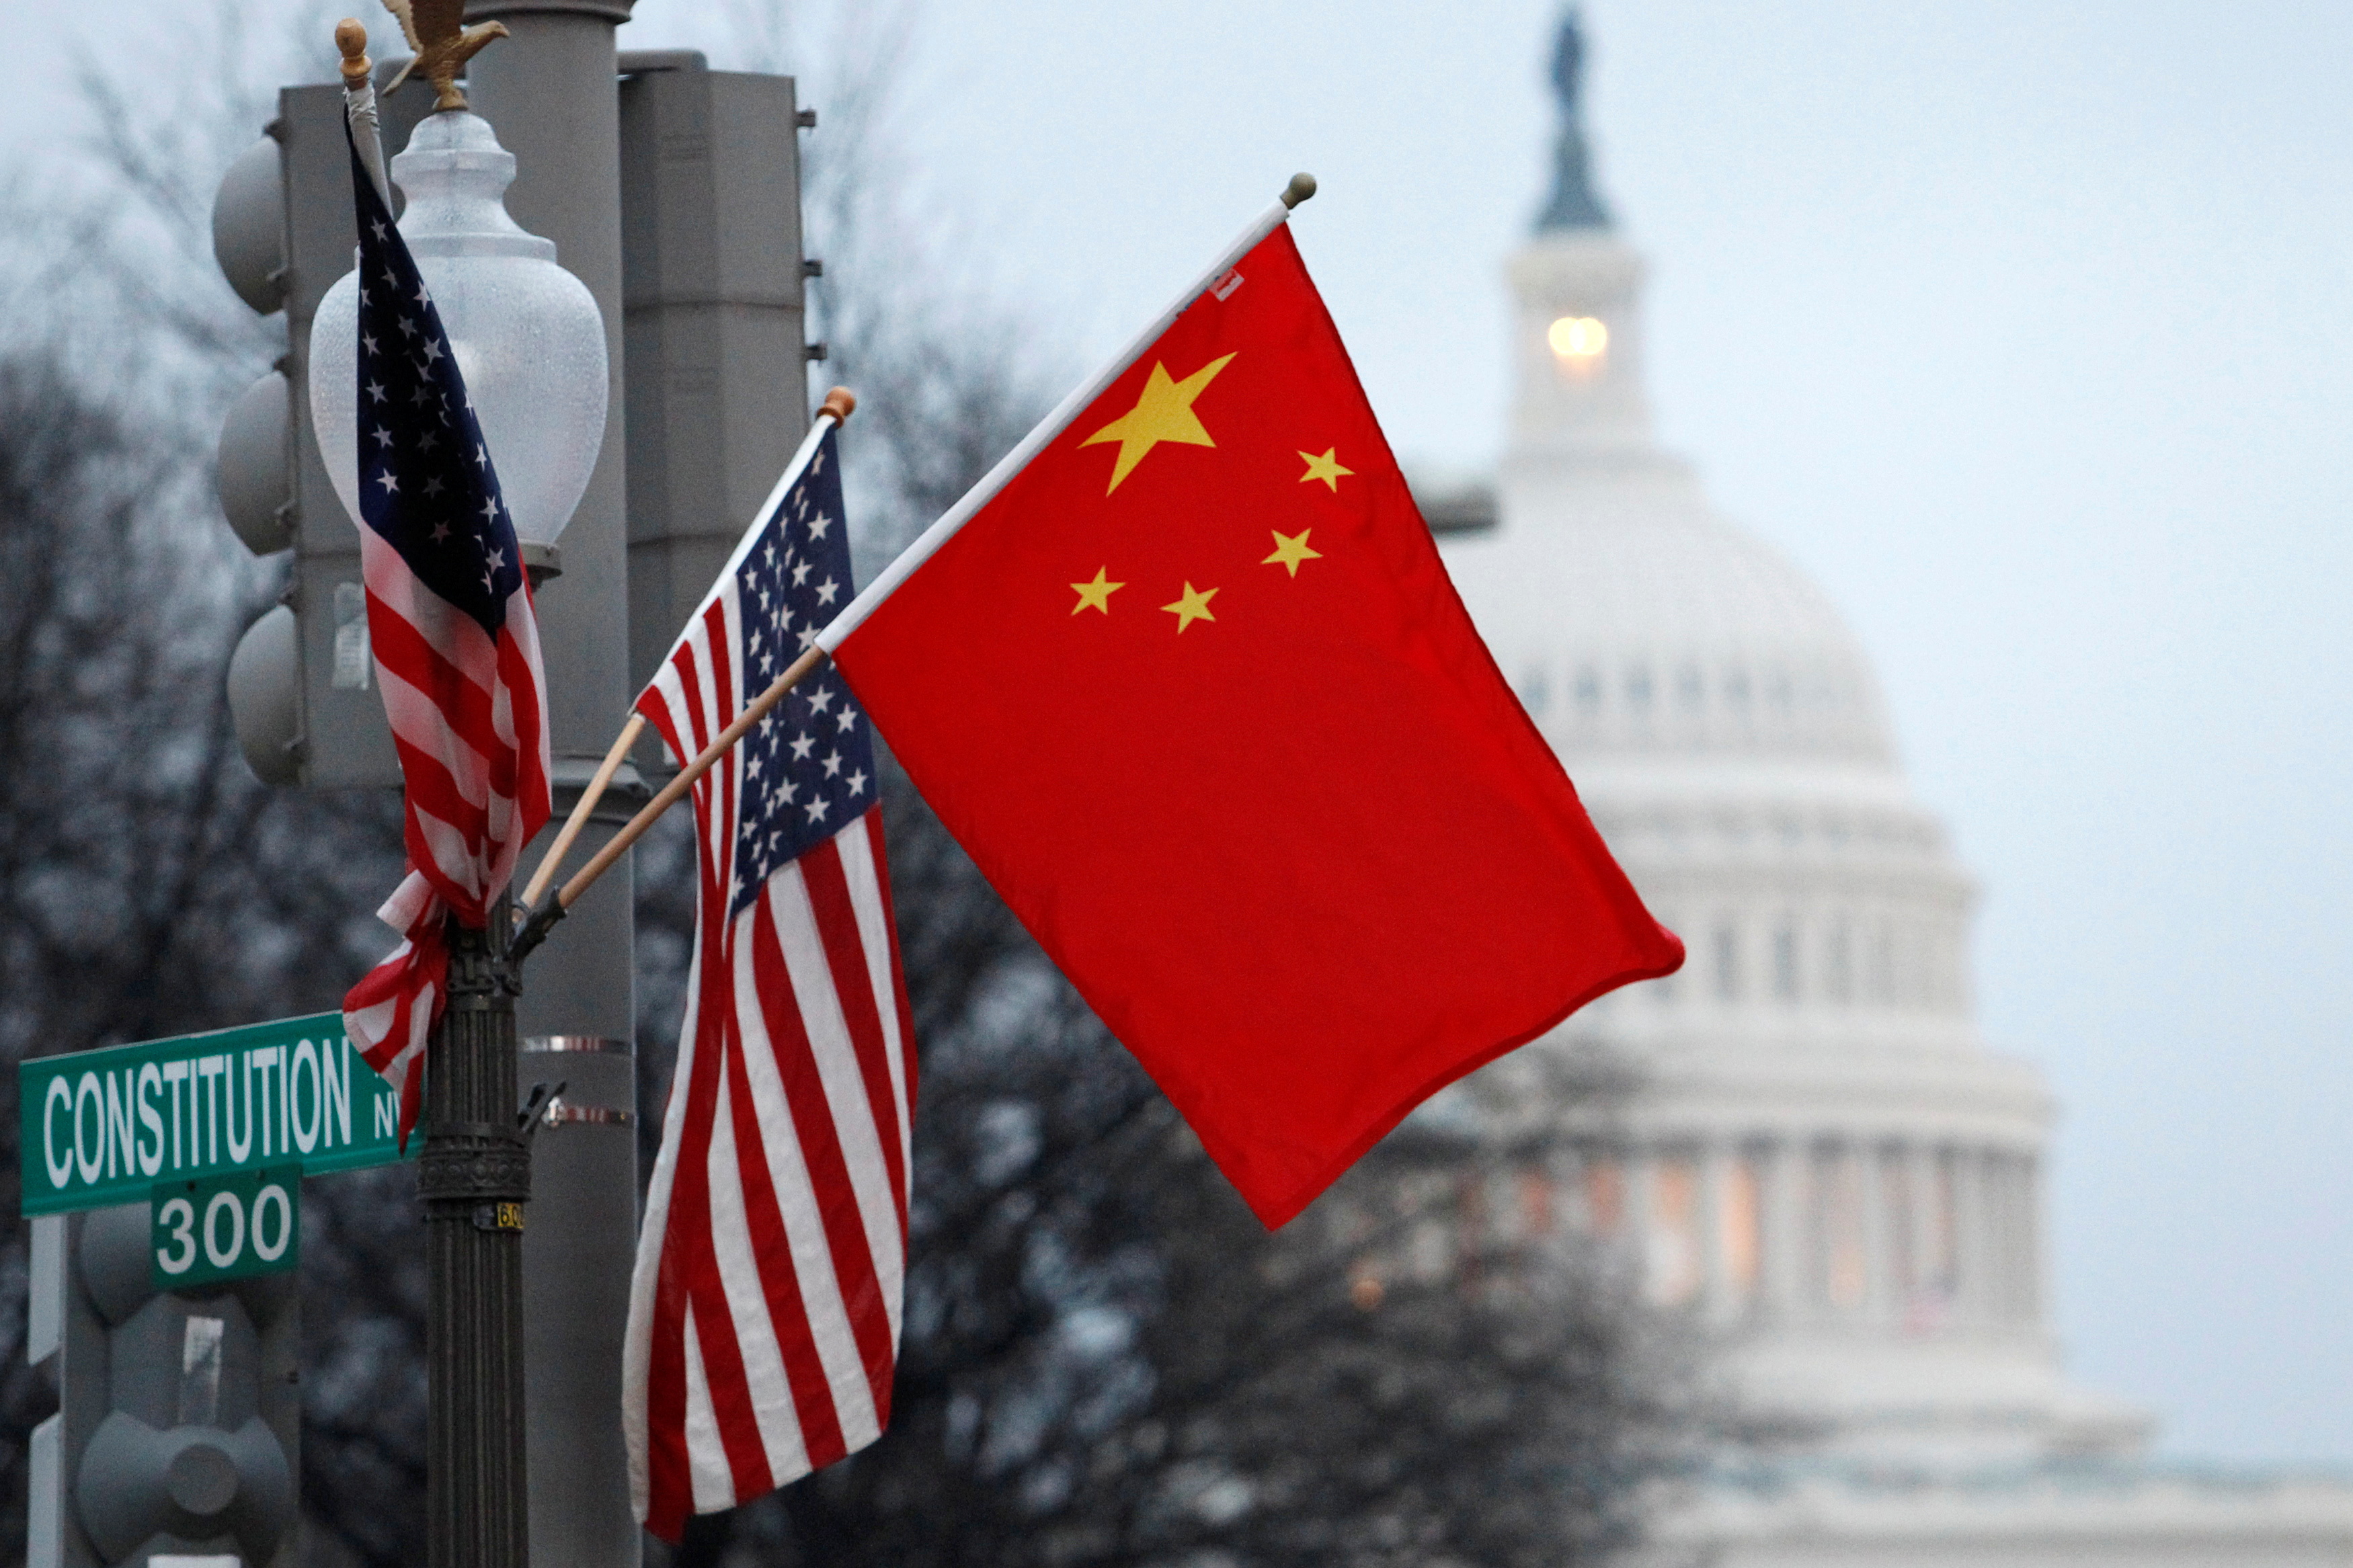 Η σημαία της Λαϊκής Δημοκρατίας της Κίνας και τα αστέρια και ρίγες των ΗΠΑ κυματίζουν σε έναν φανοστάτη κατά μήκος της Λεωφόρου Πενσυλβάνια κοντά στο Καπιτώλιο των ΗΠΑ στην Ουάσιγκτον